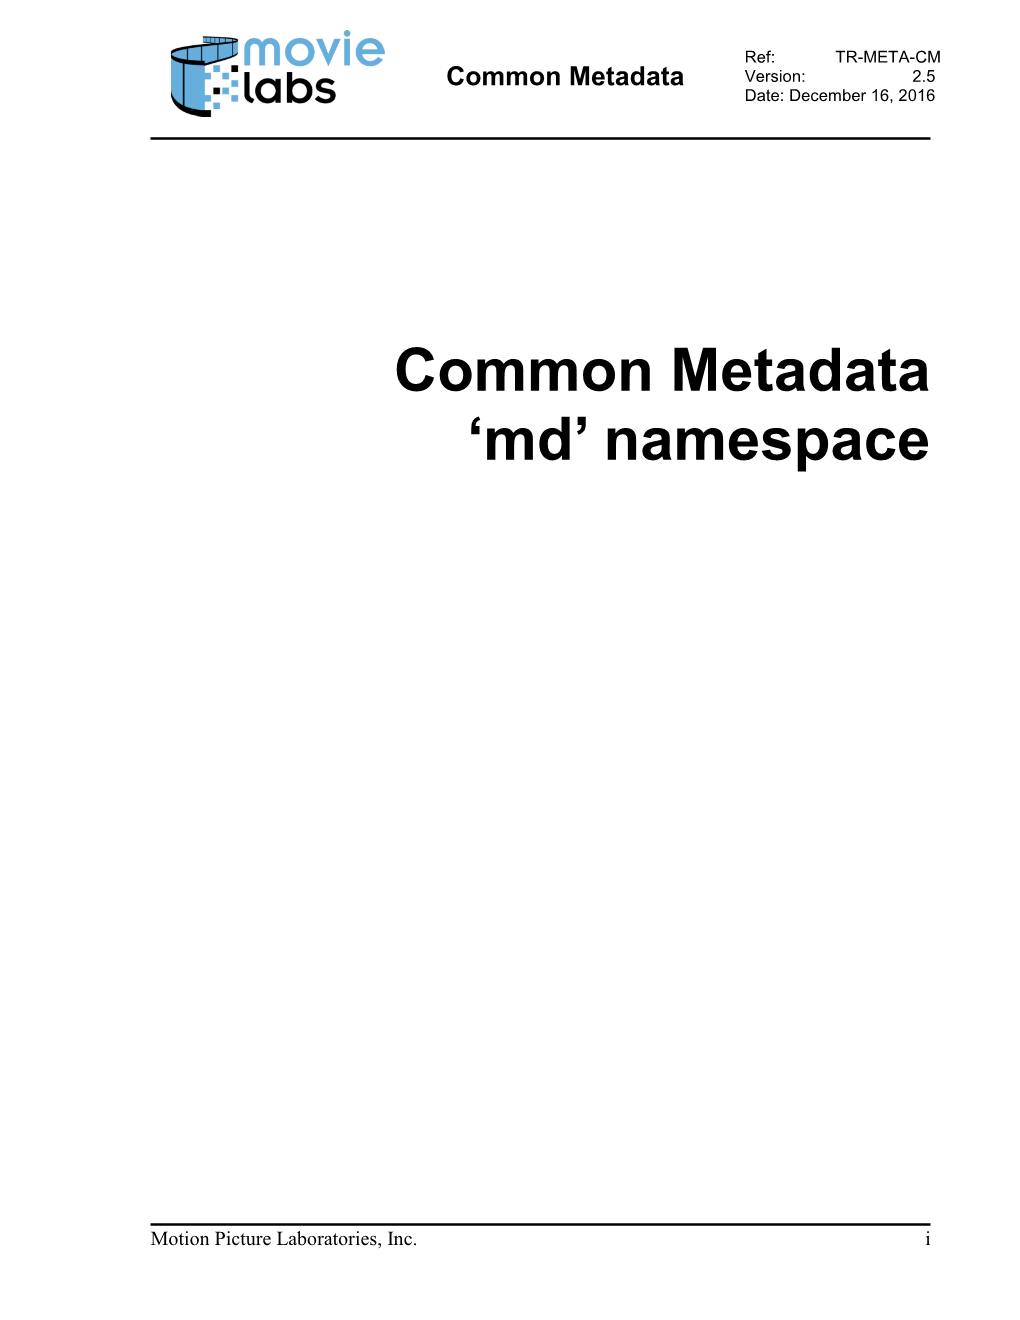 Common Metadata Version: 2.5 Date: December 16, 2016